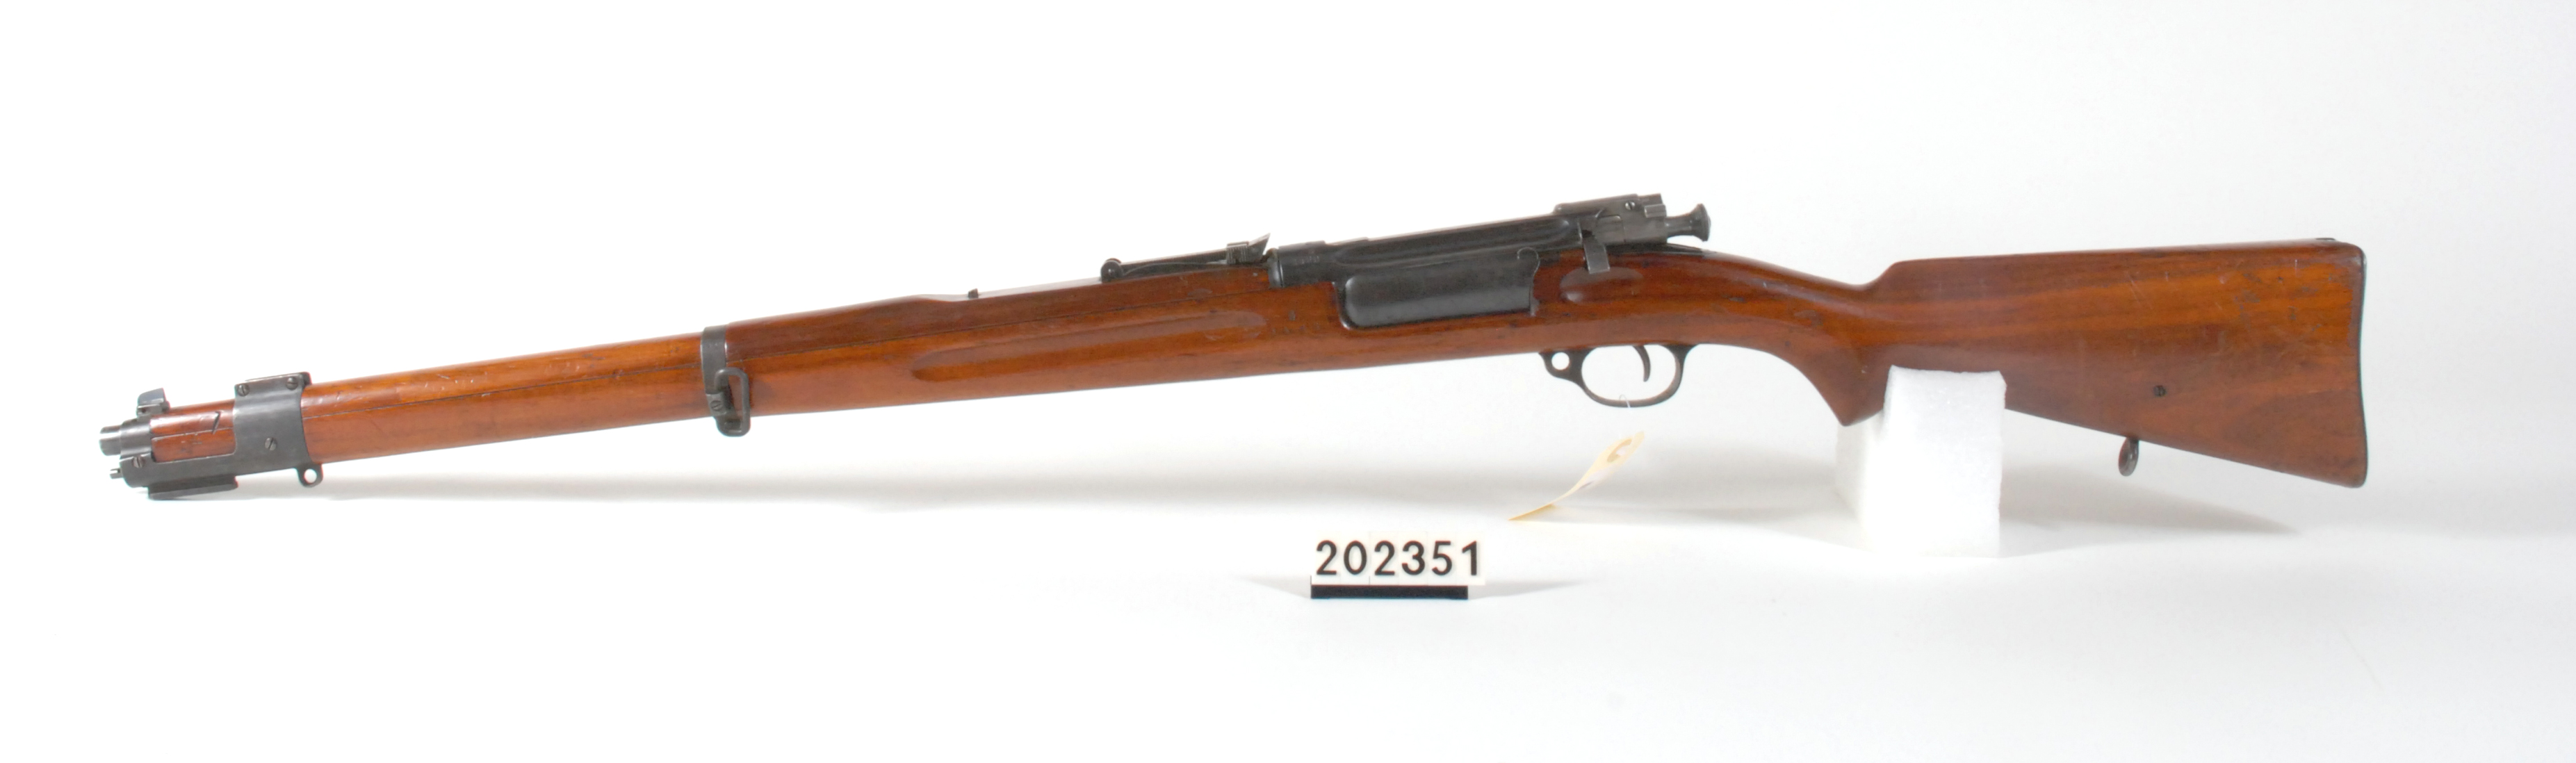 ./guns/rifle/bilder/Rifle-Kongsberg-Krag-M1912-1460-2.jpg